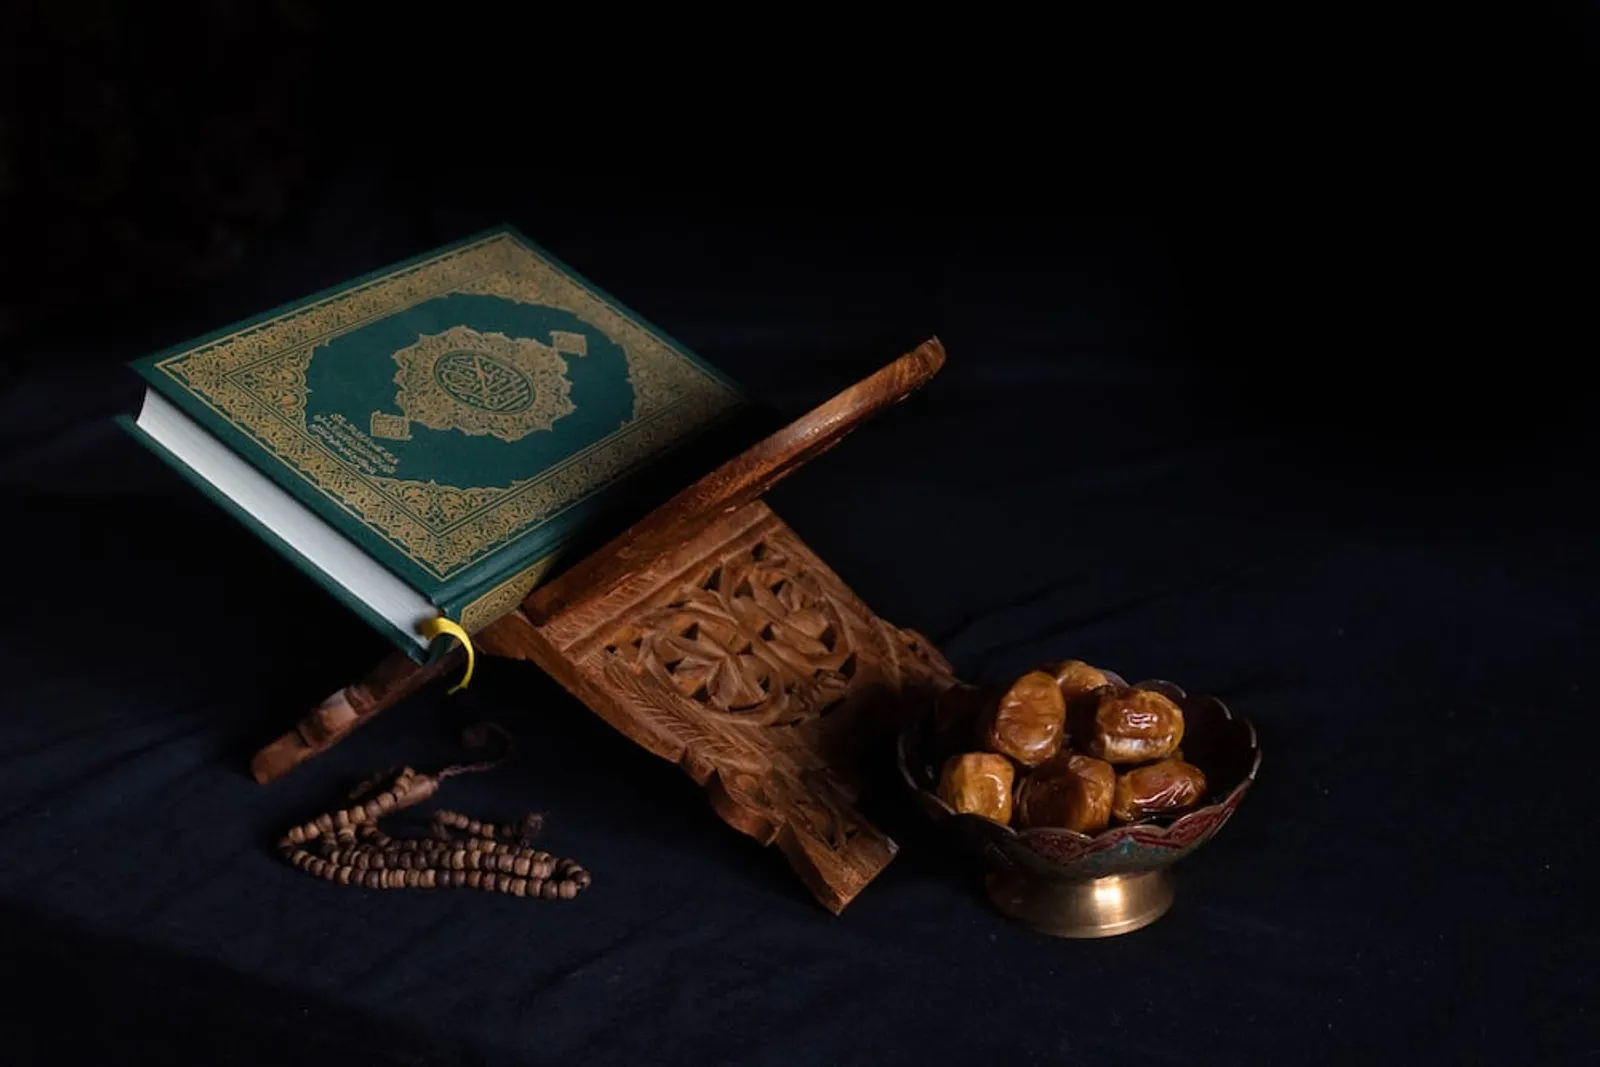 Bacaan Doa Kamilin, Lengkap dengan Arab, Latin, dan Artinya